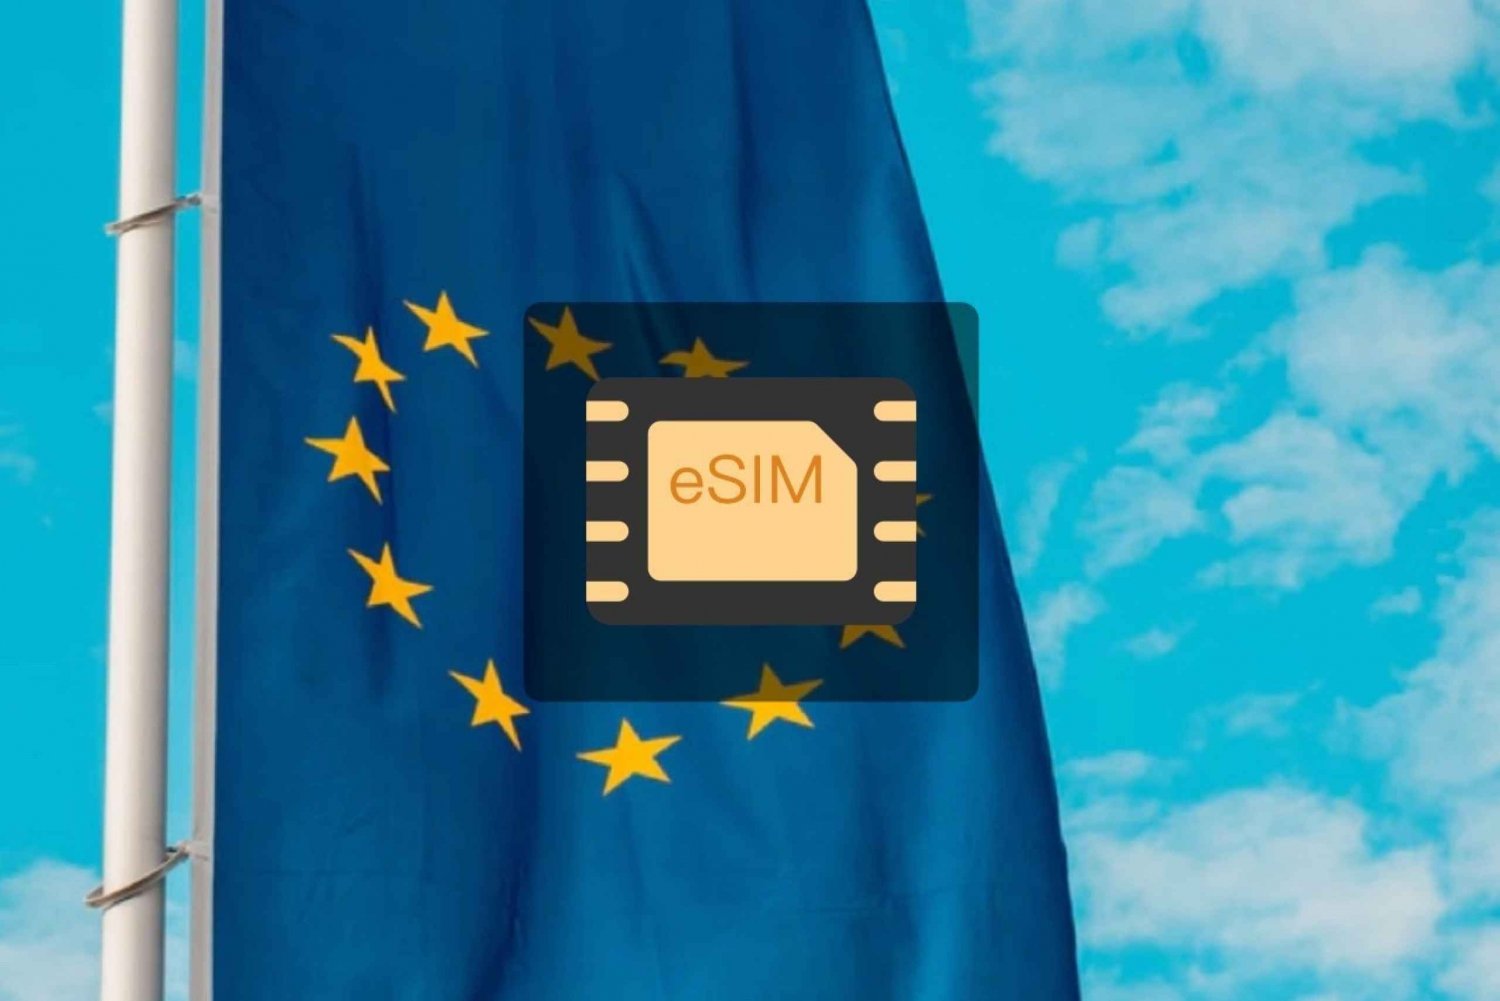 Regno Unito/Europa: piano dati mobile eSim